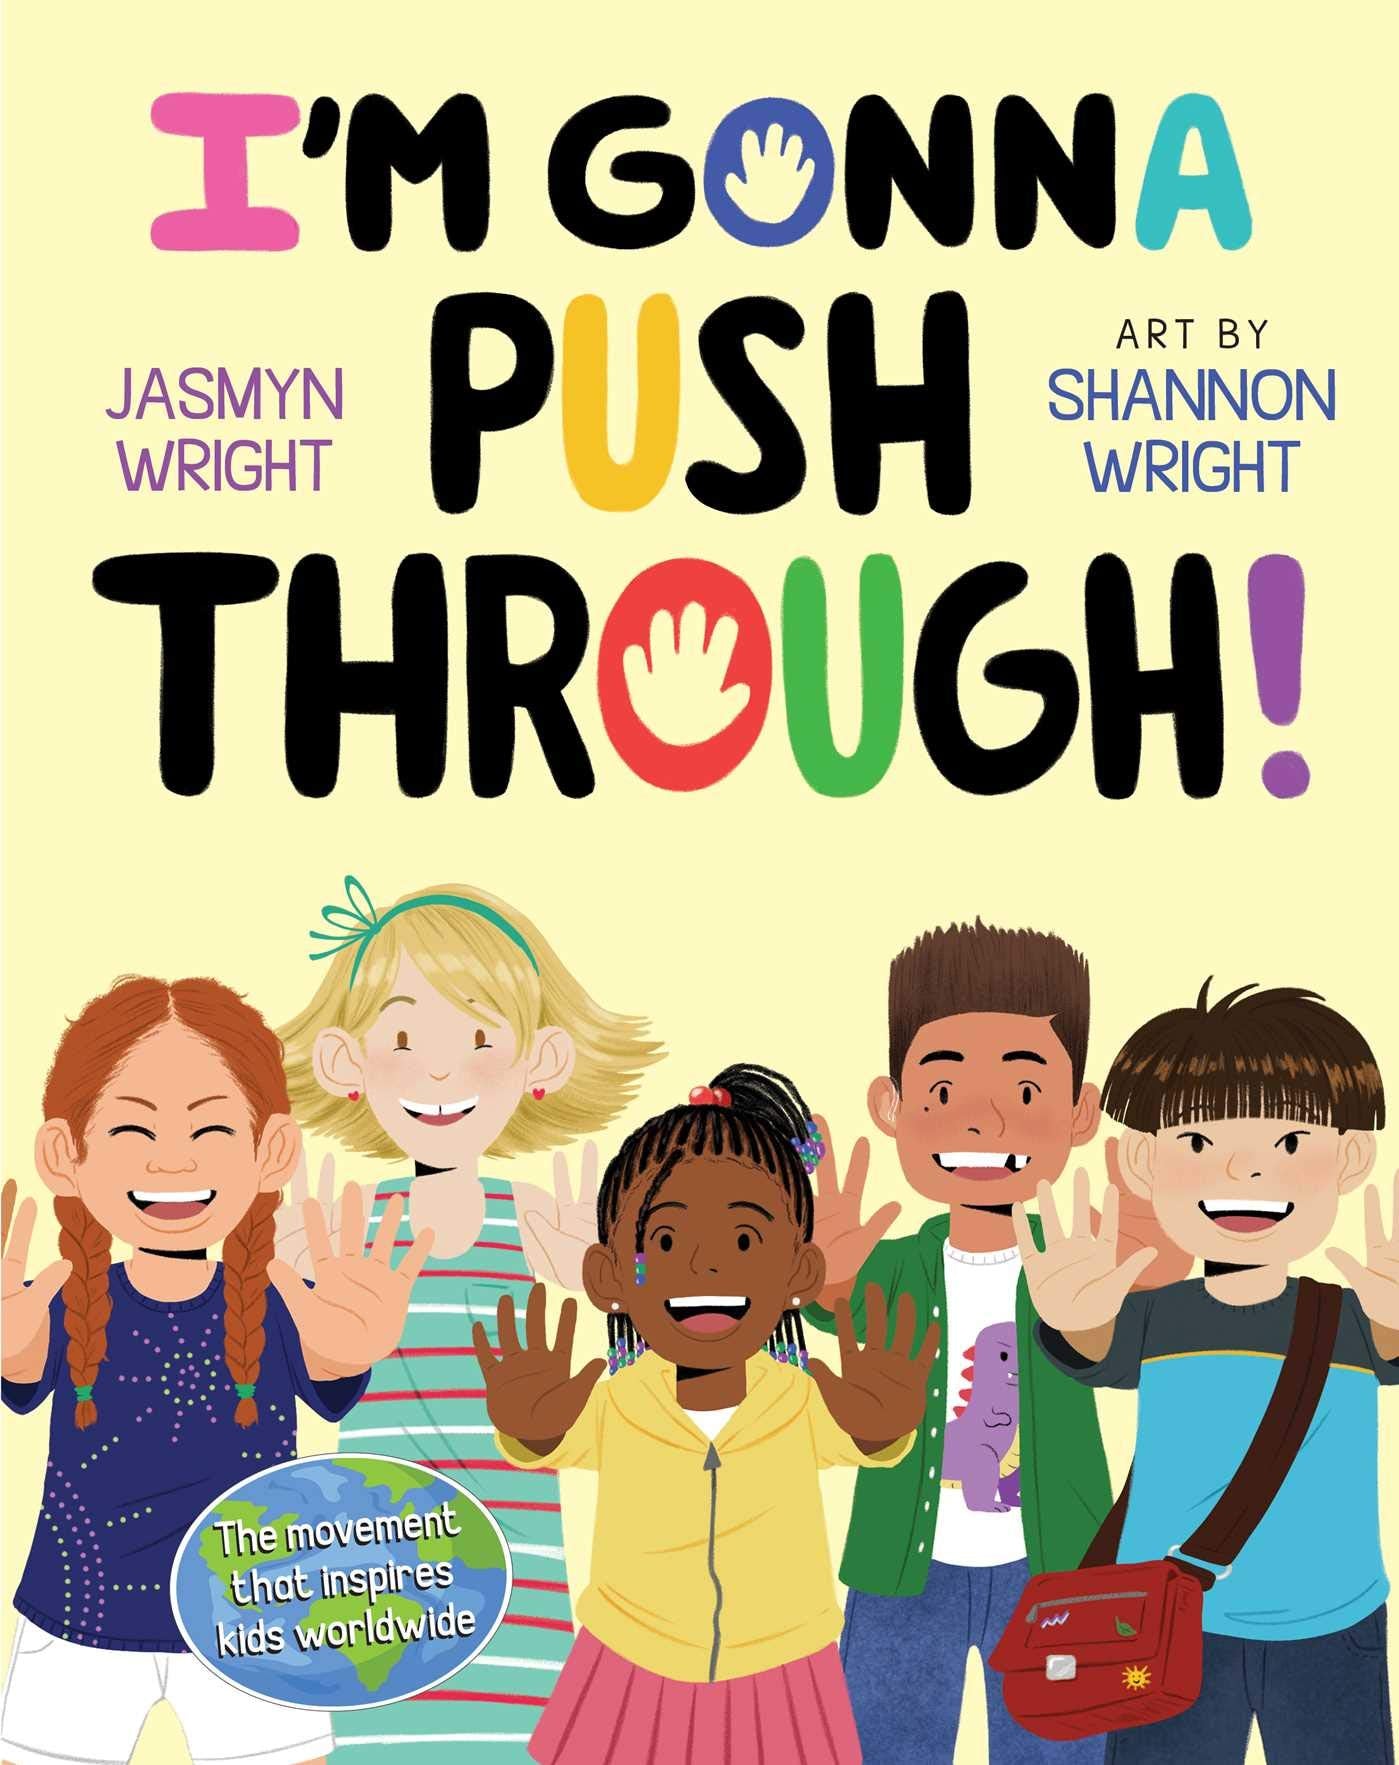 I'm Gonna Push Through! by Jasmyn Wright